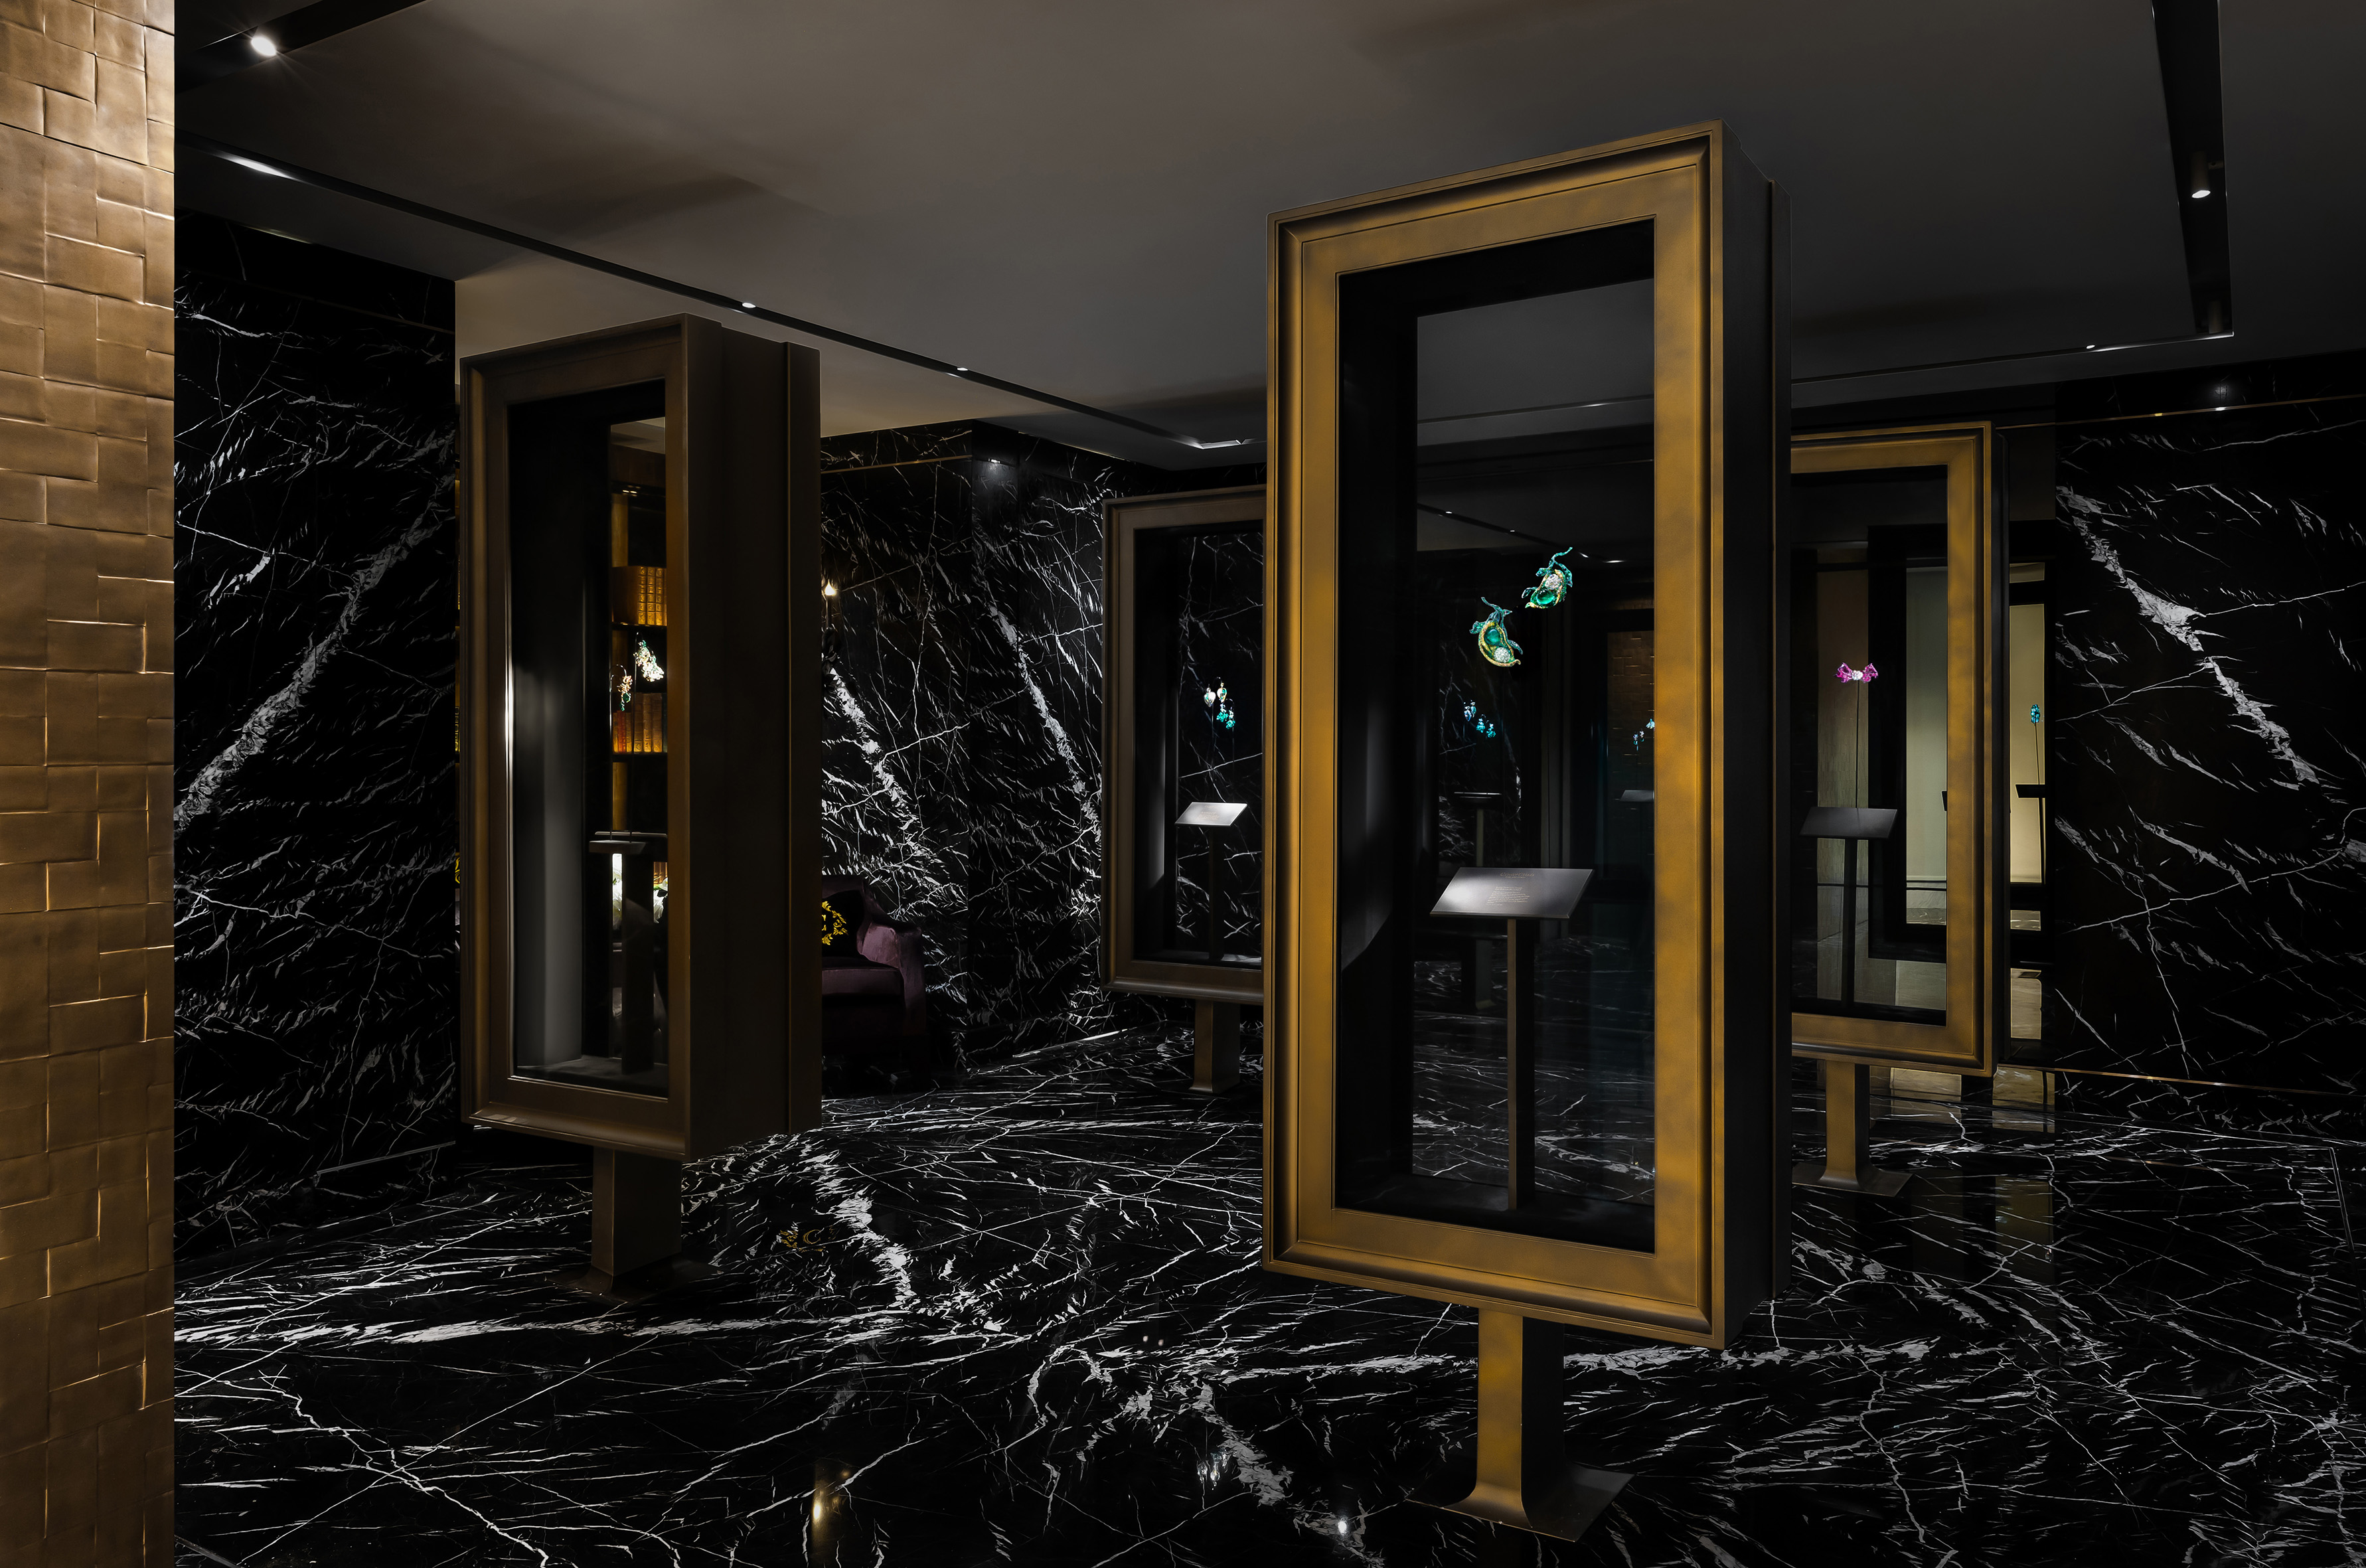 2022 Black Label Masterpieces X & XI 《春之荳蔻胸針》現已來到位於台北晶華酒店的 CINDY CHAO The Art Jewel Gallery 藝術珠寶典藏館展出，與首次曝光的蠟雕作品一同呈現於四座如畫框的展櫃中。